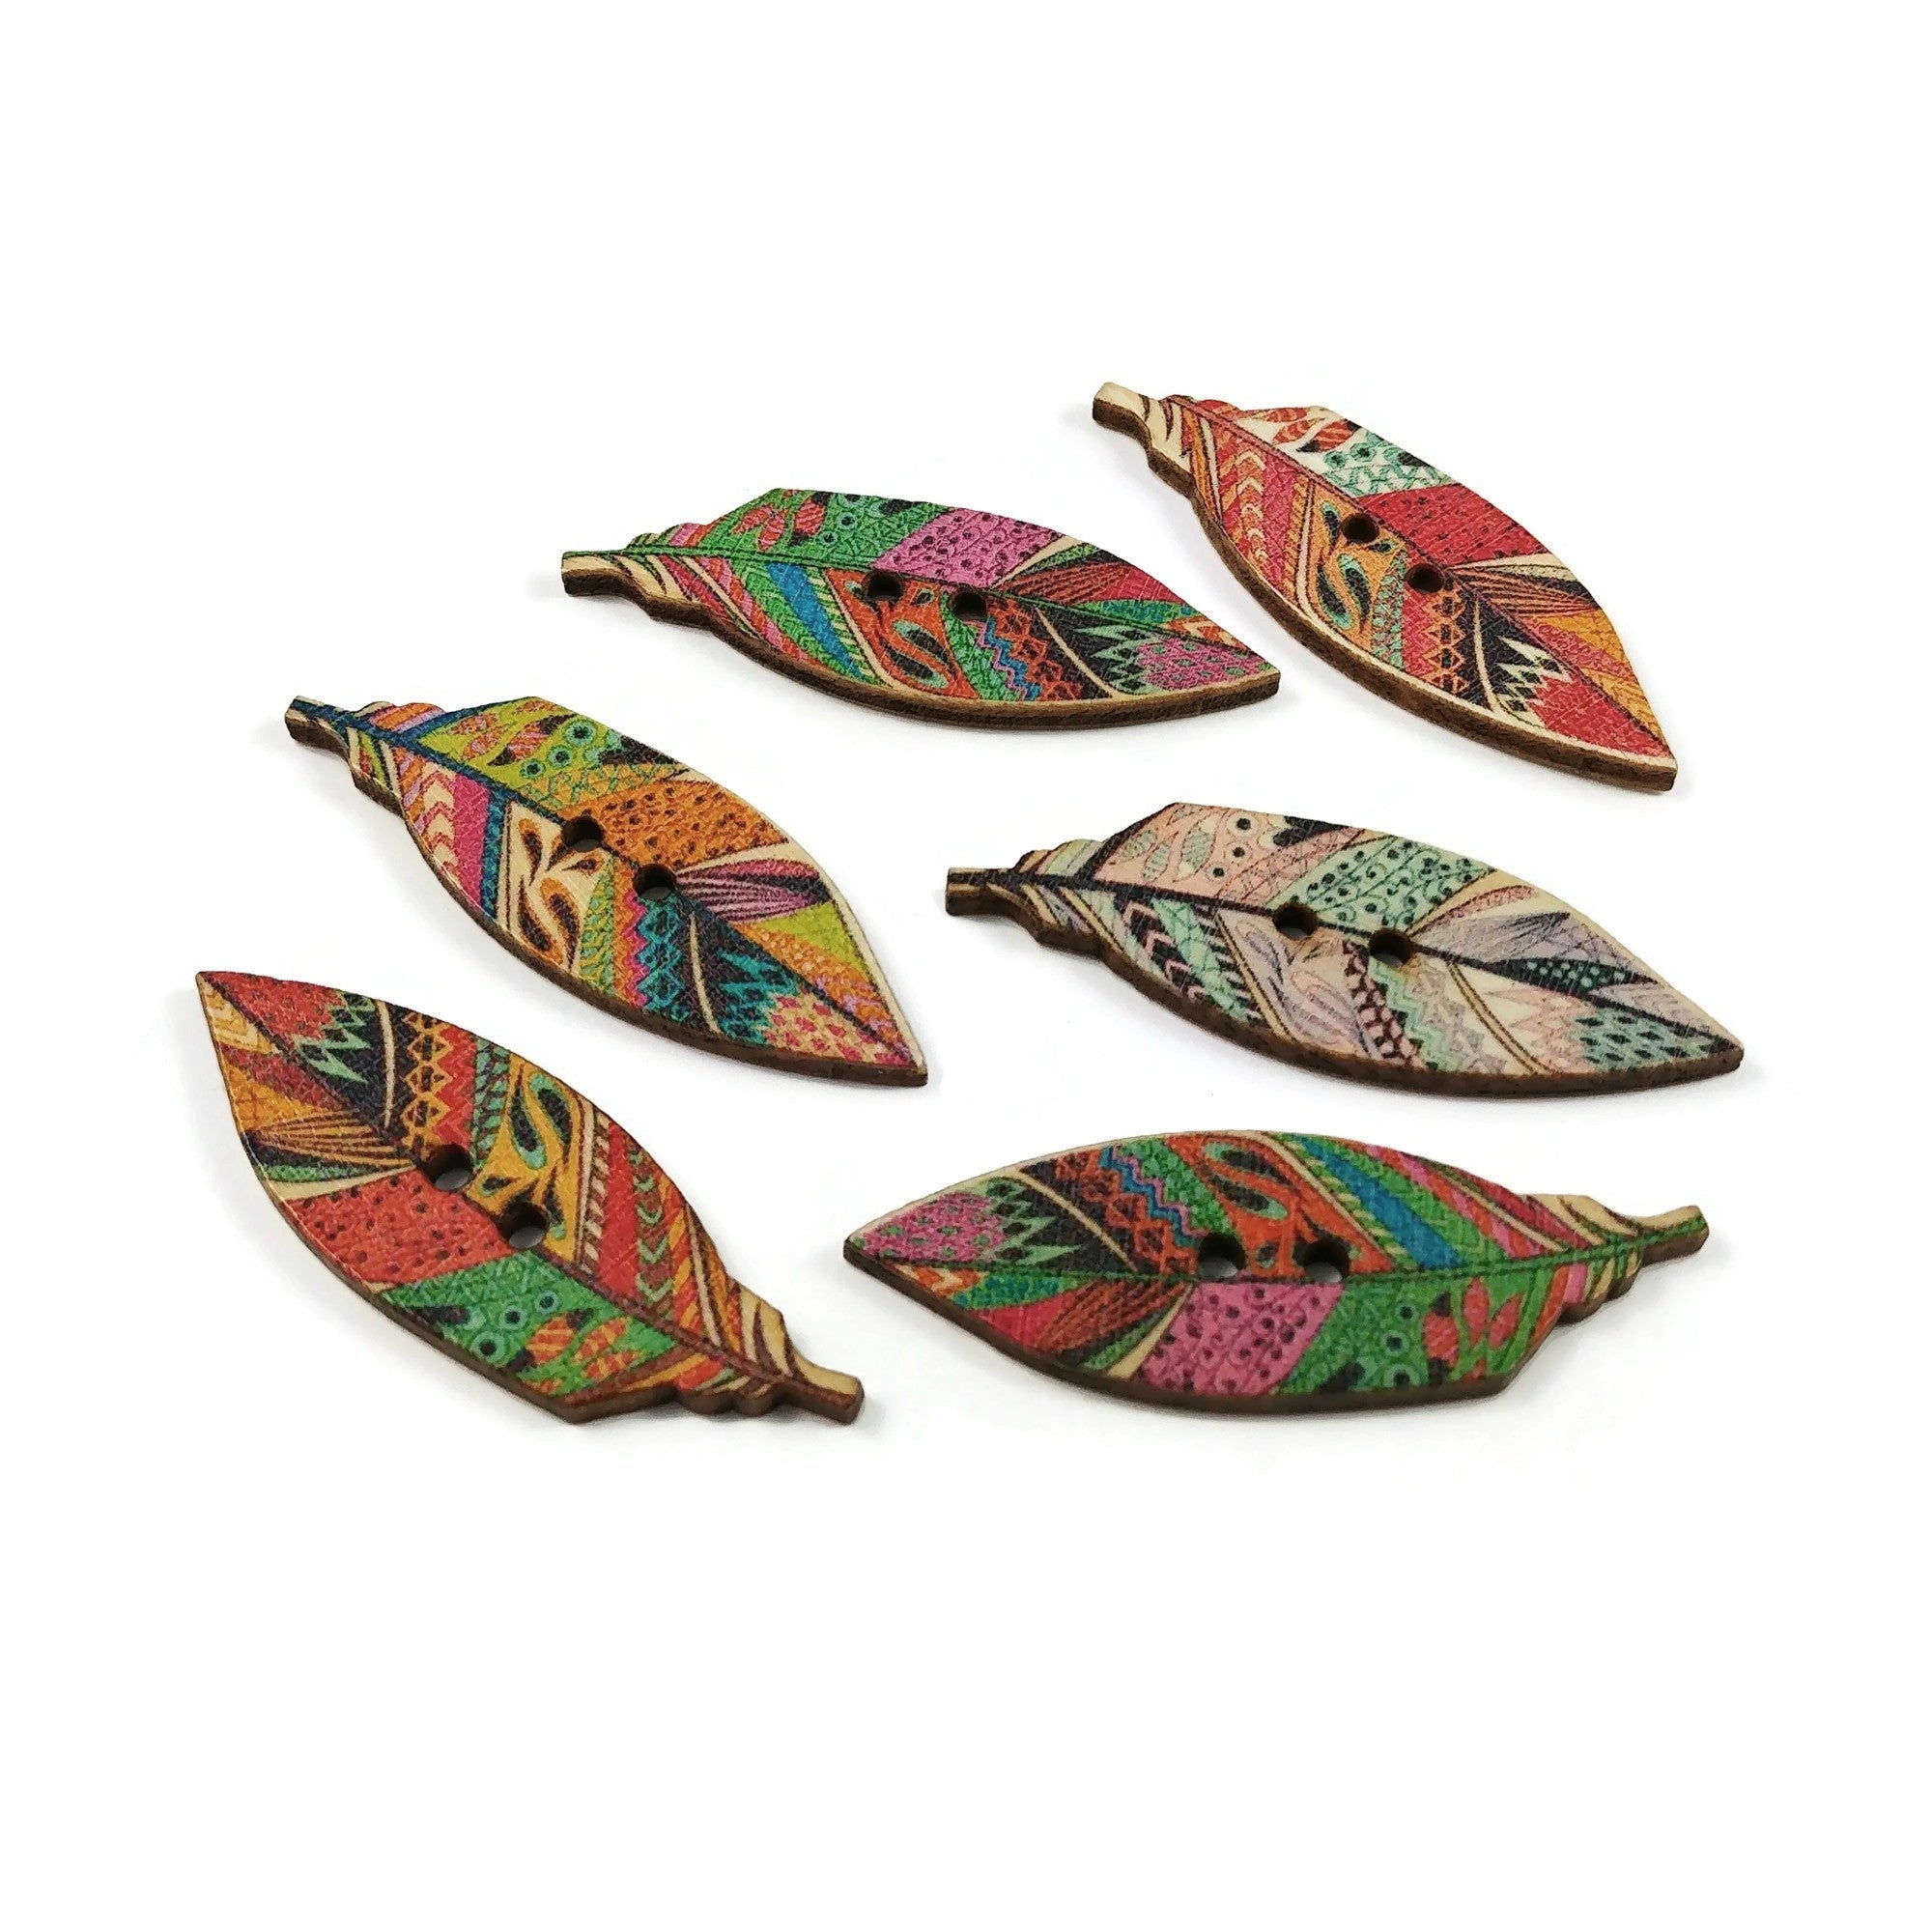 6 Boutons plumes indiennes couleurs variées - lot de boutons en bois 40mm